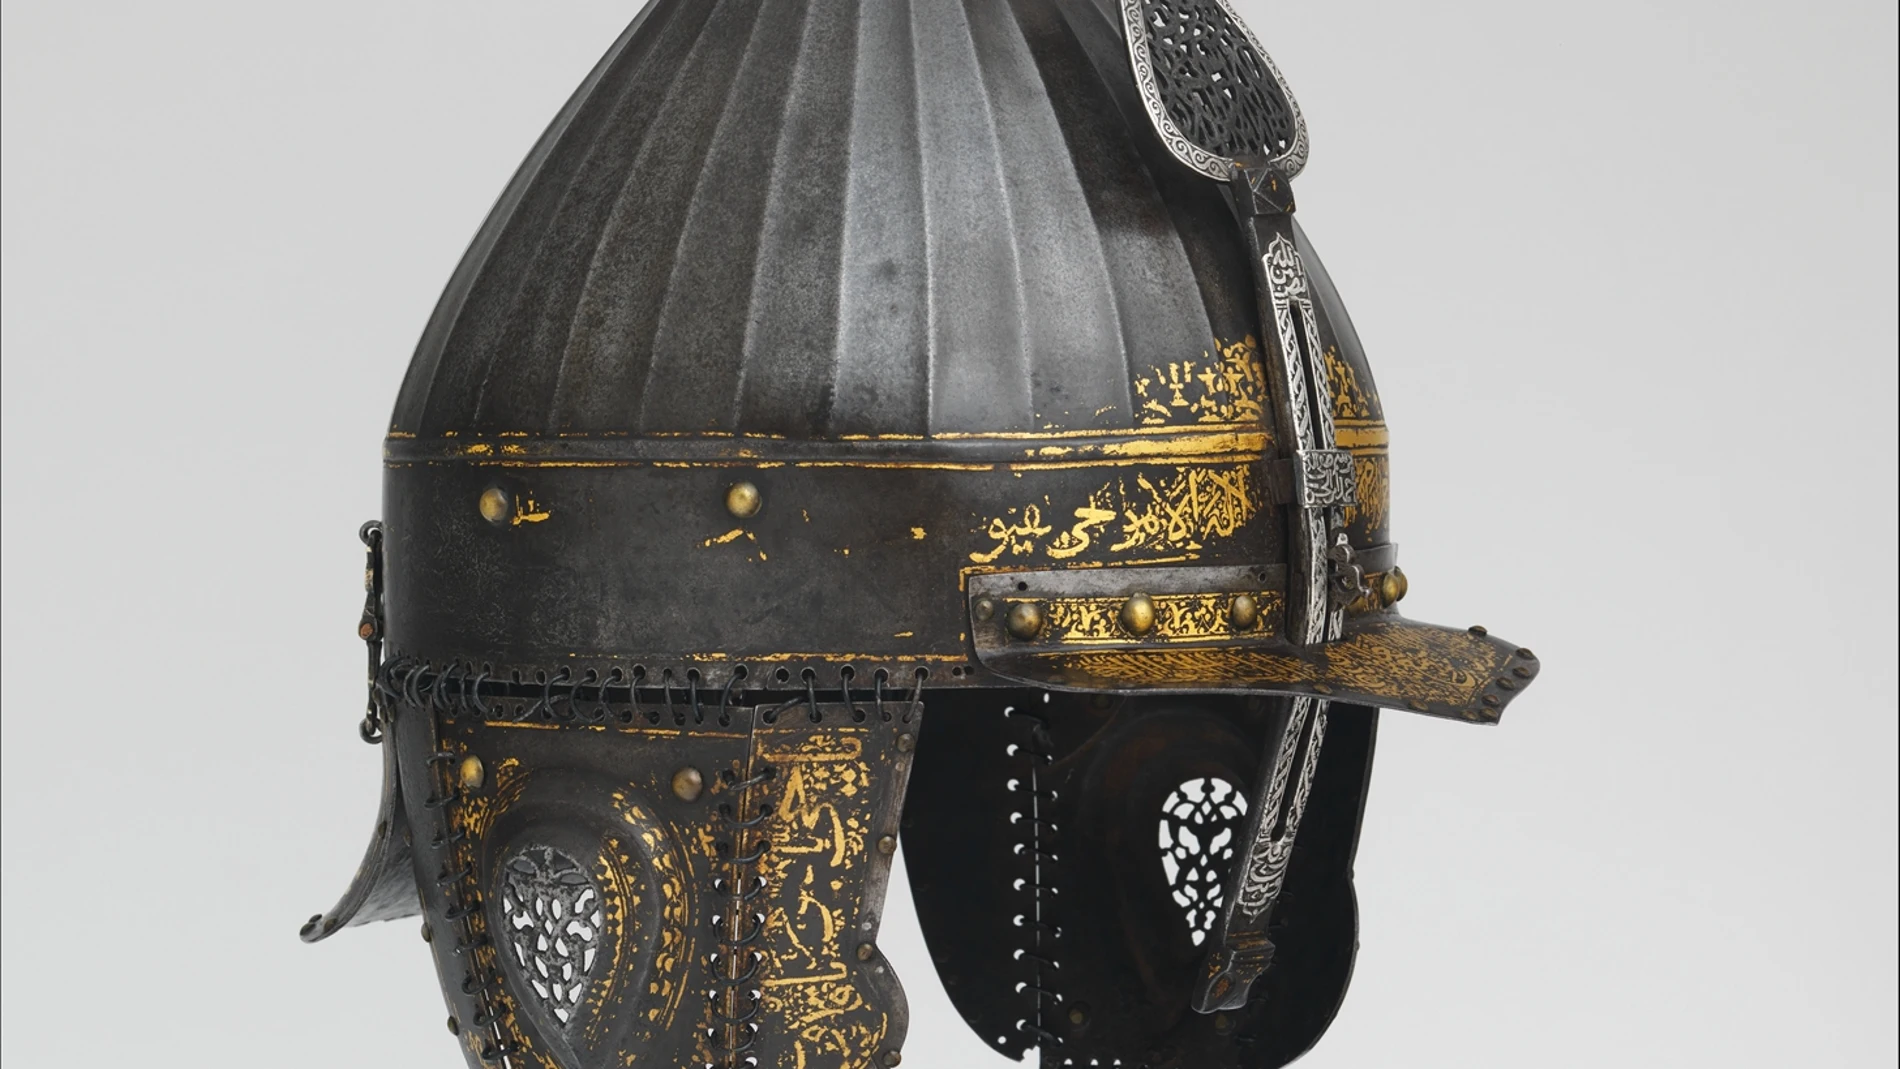 Muestra de unos de los cascos empleados por el Imperio otomano en el siglo XVI